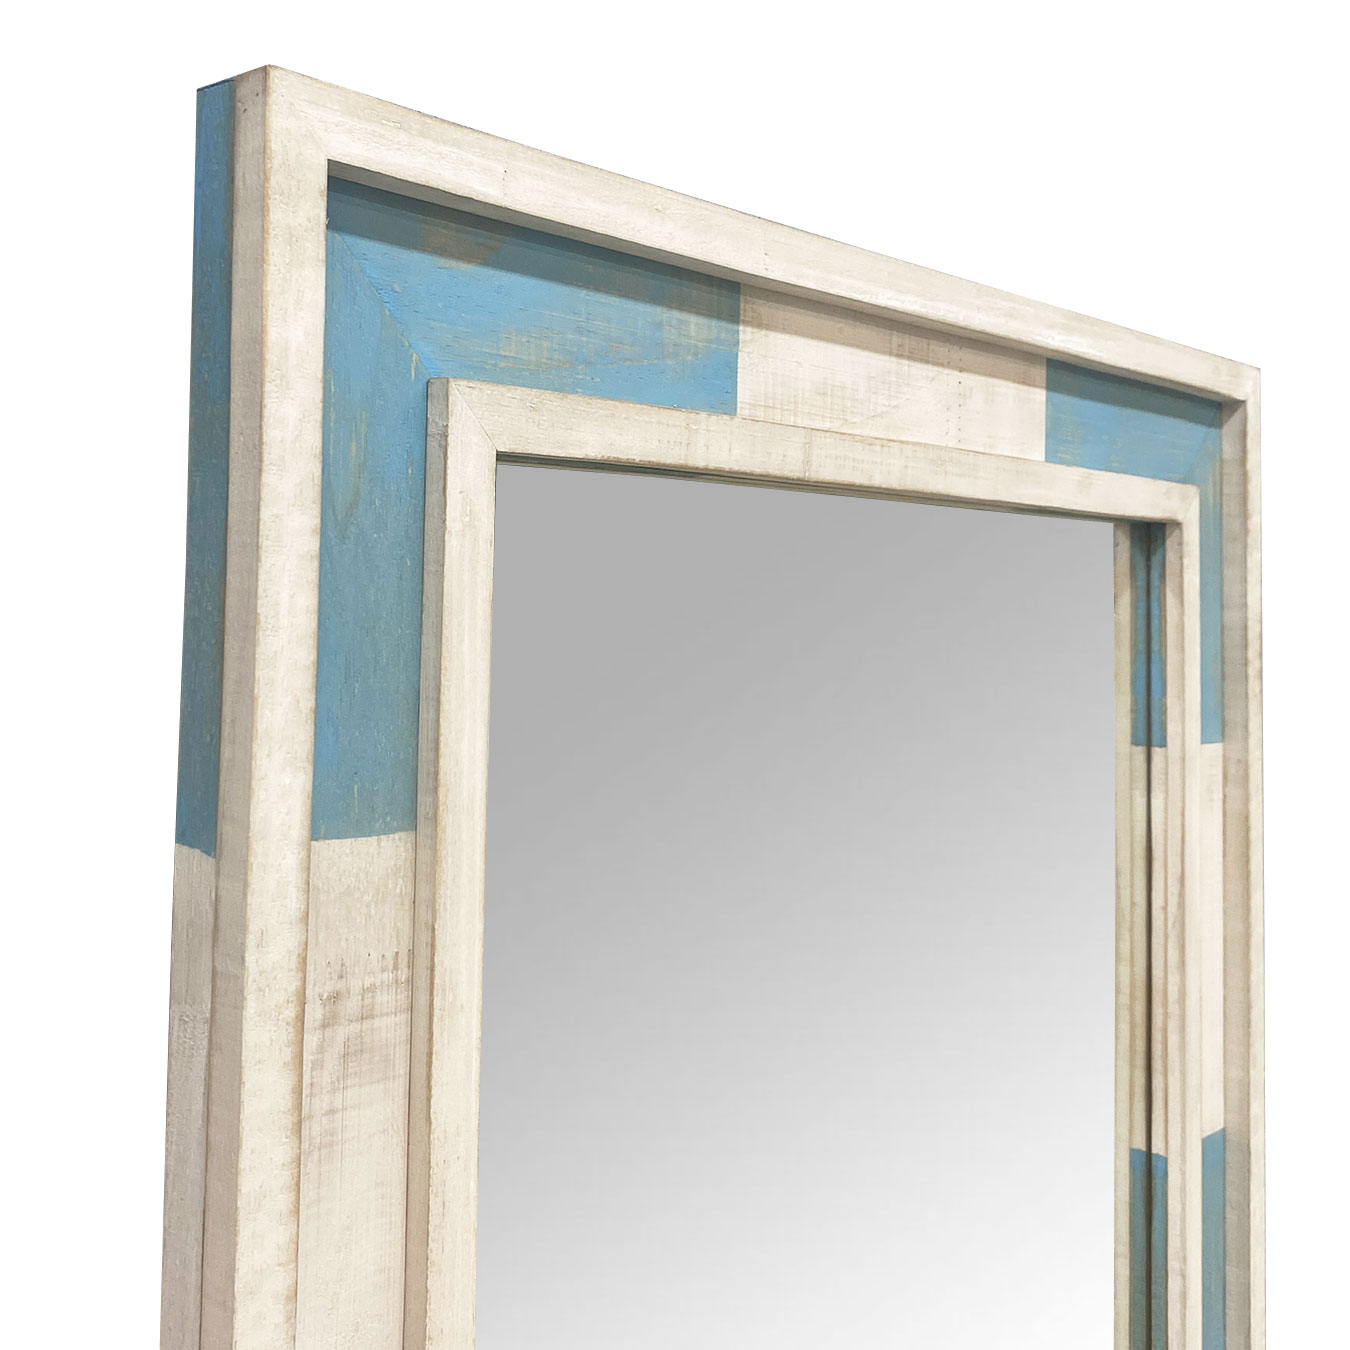  Moldura R�stica Decorativa em Madeira Azul e Branco Patinado para Espelhos - ESP.003 